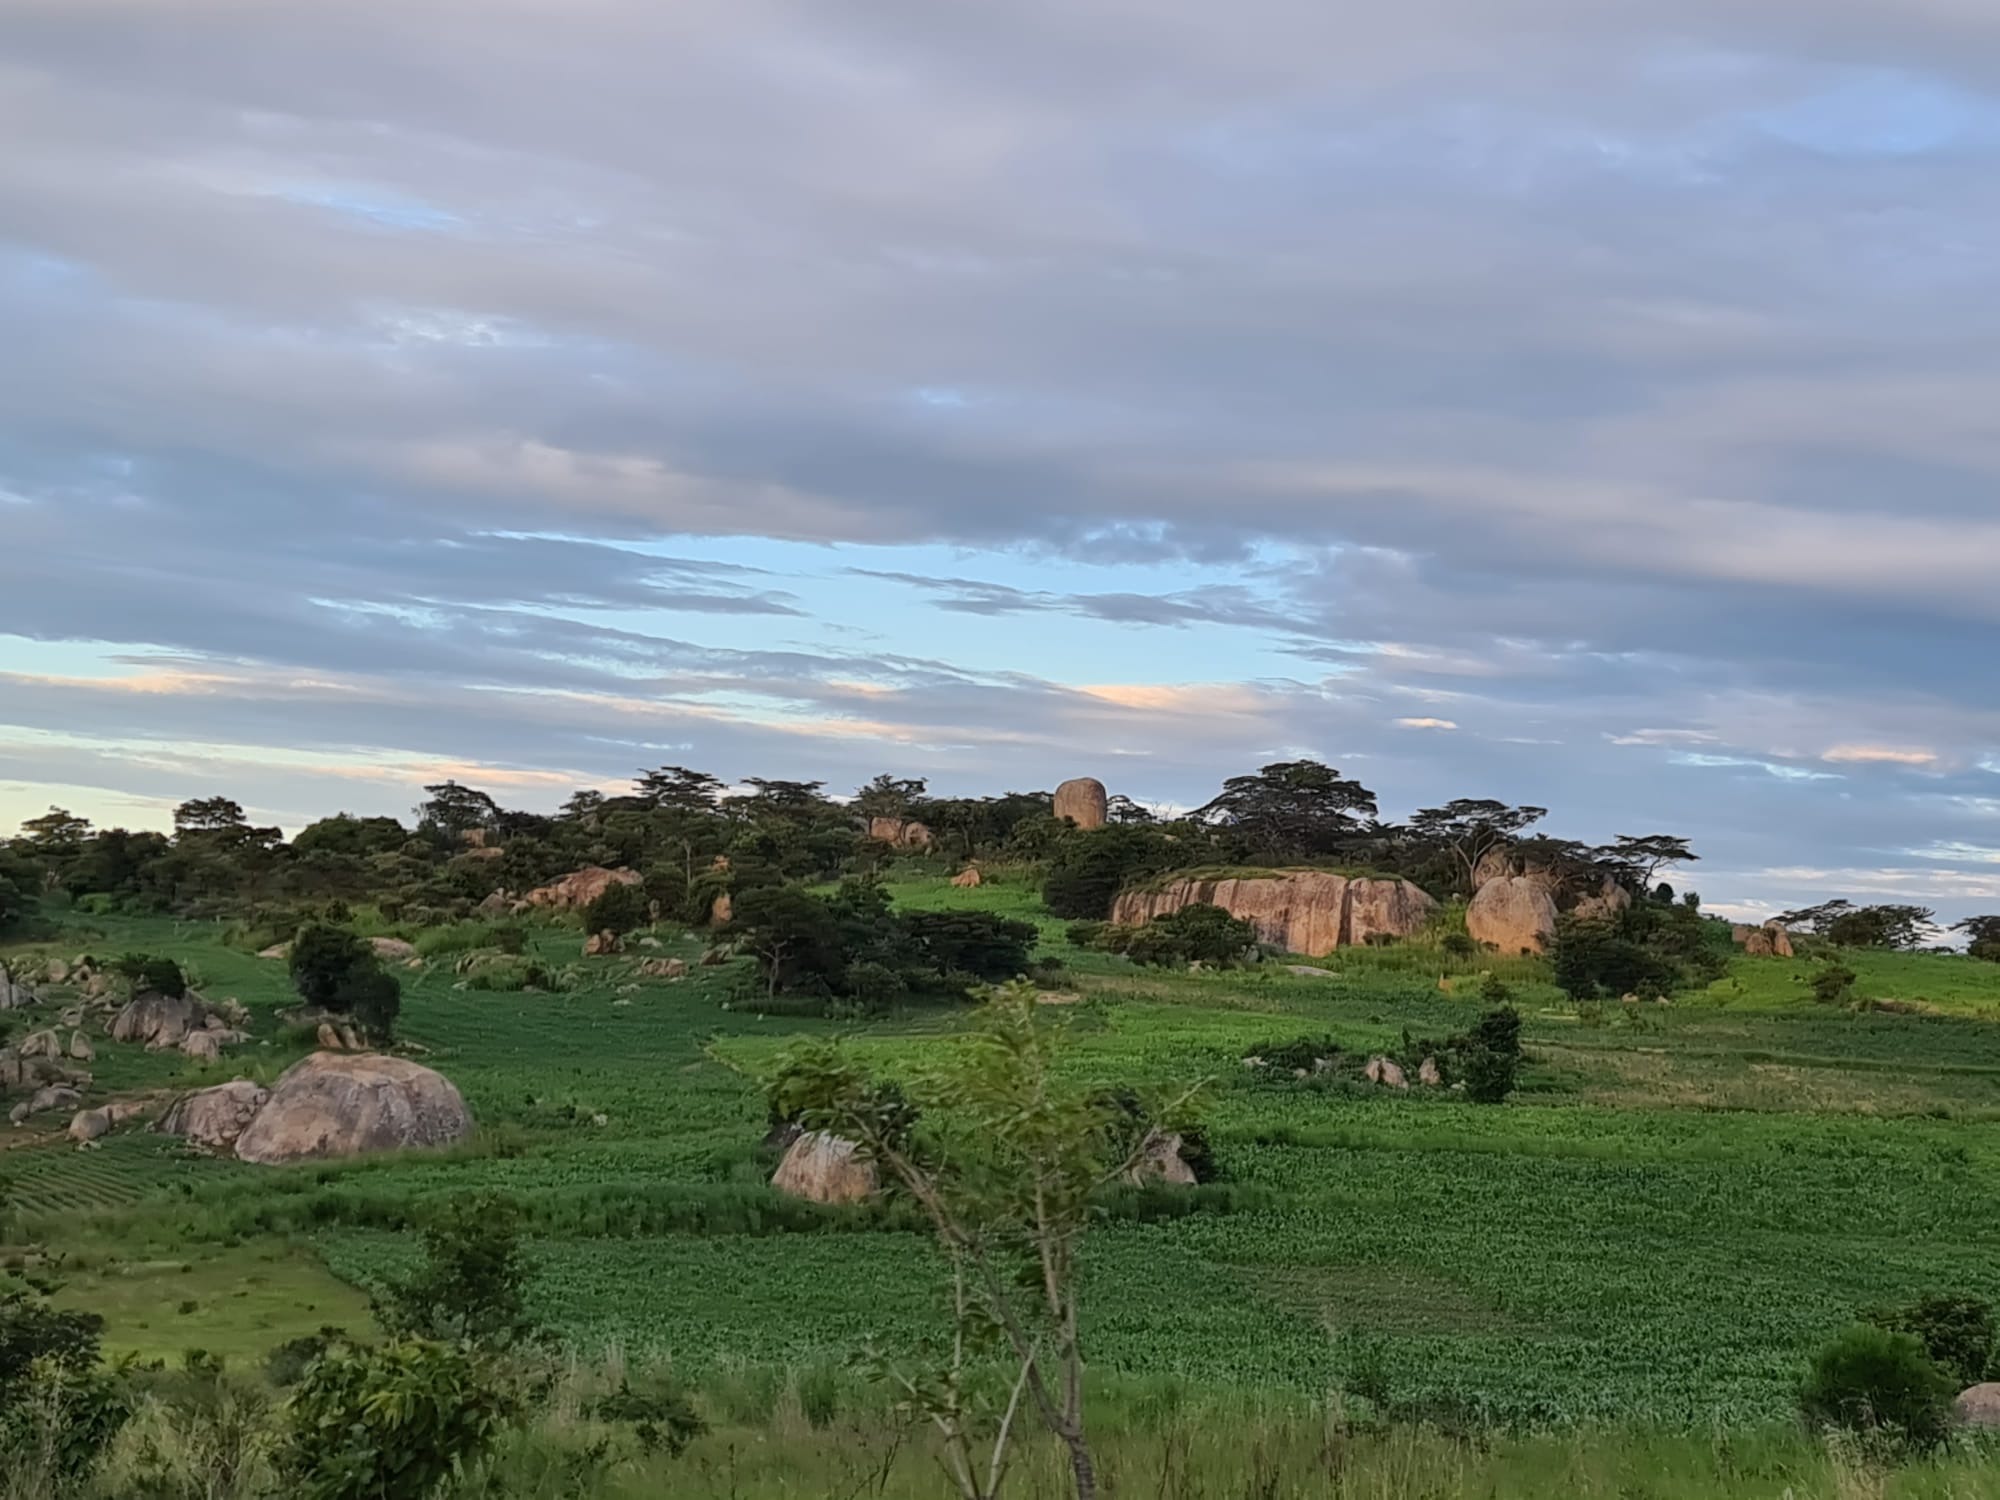 Igangidungu – Taborul regiunii Iringa